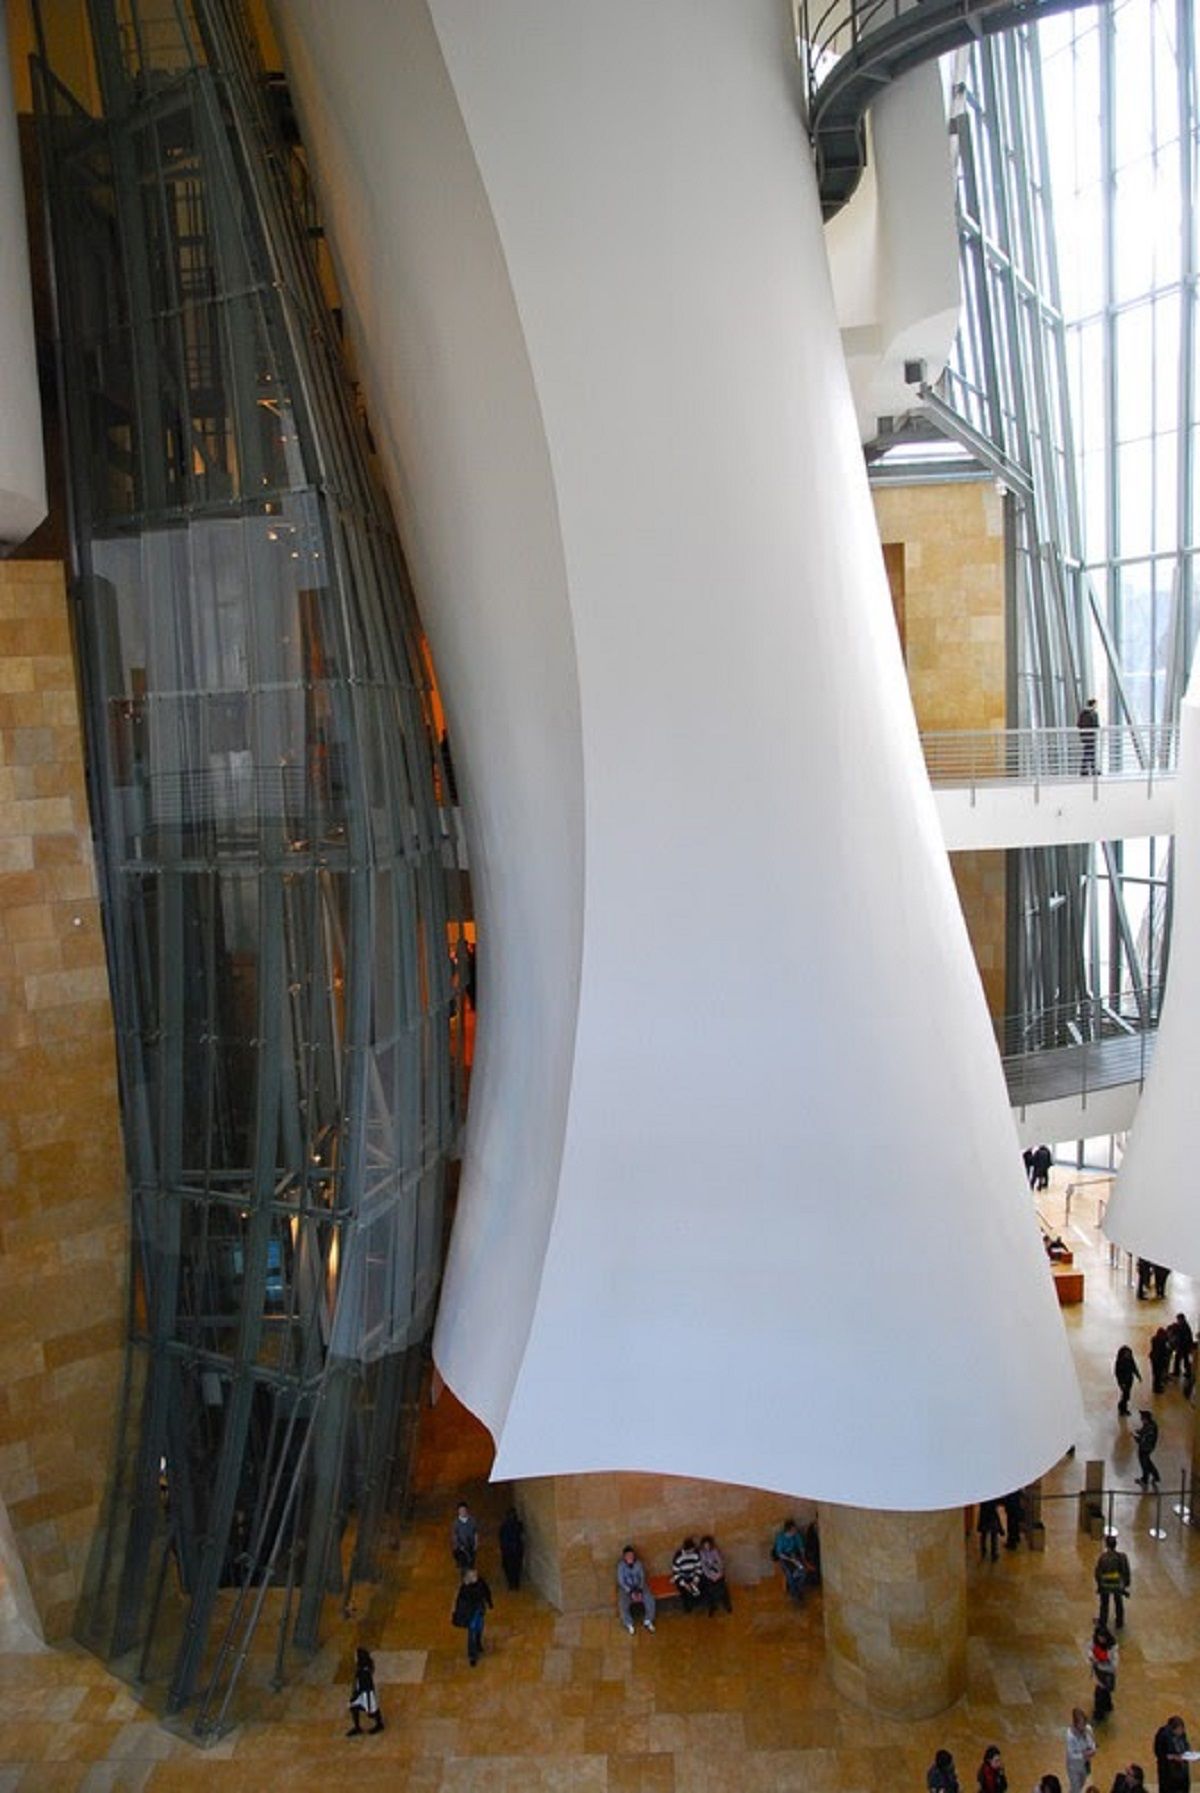 Kiến trúc kinh điển: Bảo tàng Guggenheim Bilbao | Gehry Partners